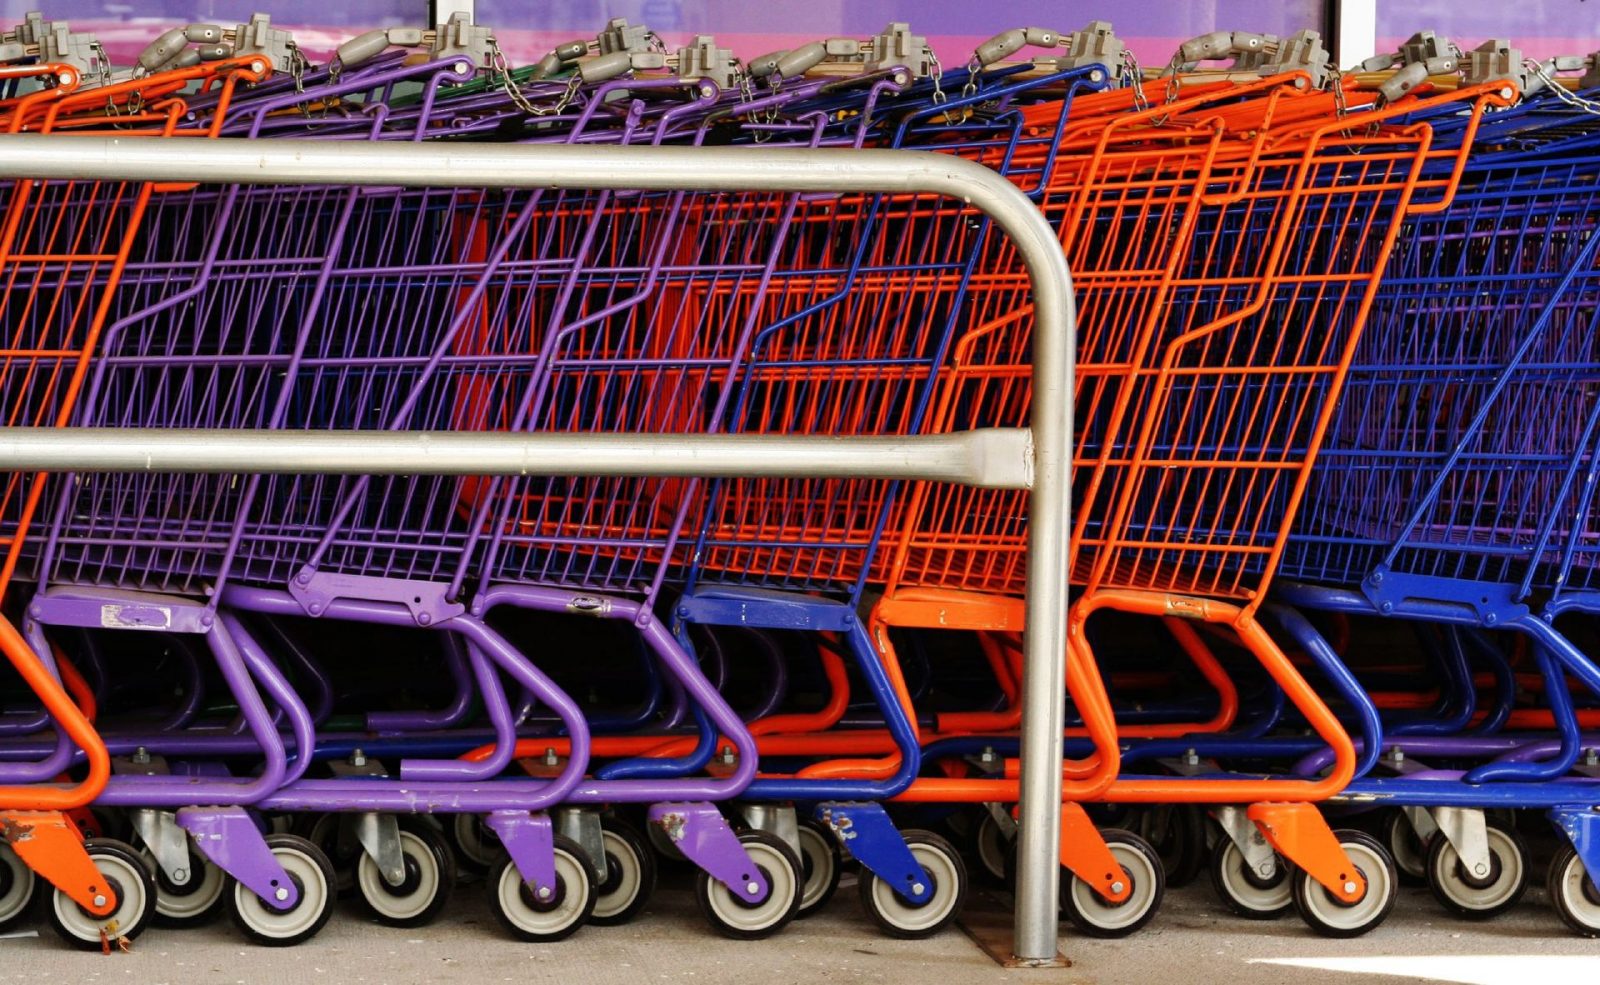 Assault by shopping cart sends man, 85, to jail